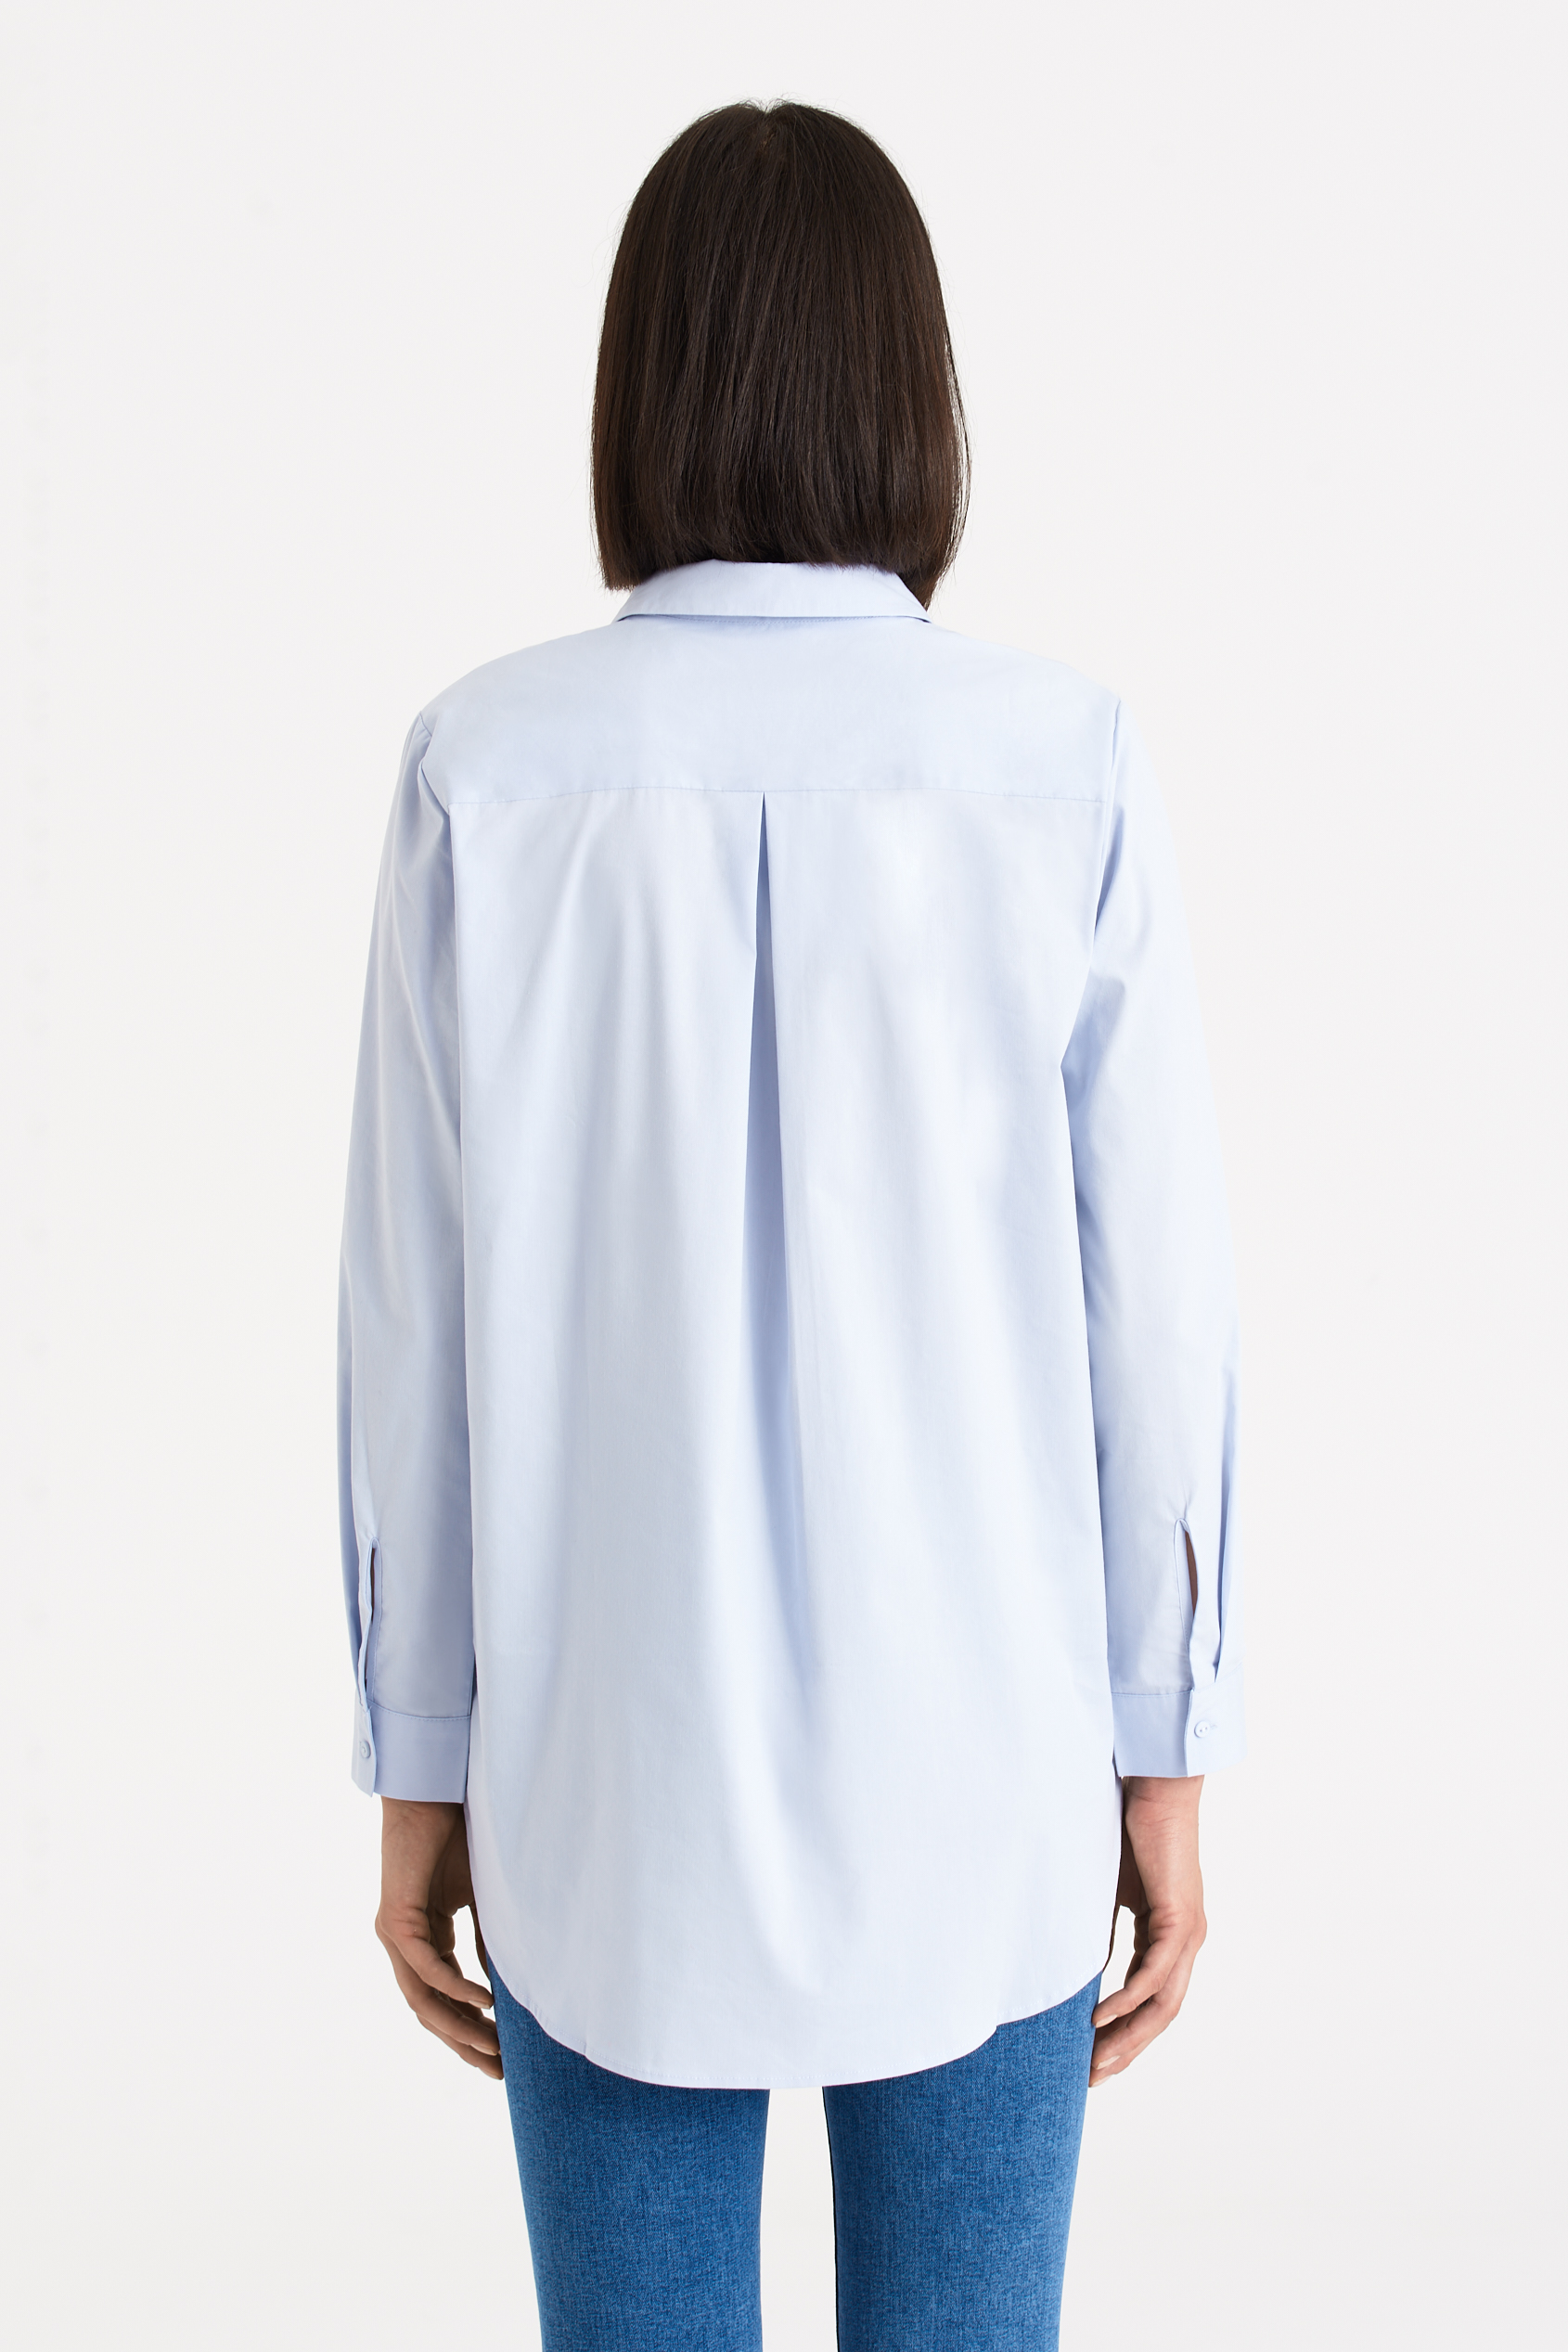 Klasyczna, jasnoniebieska tunika koszulowa